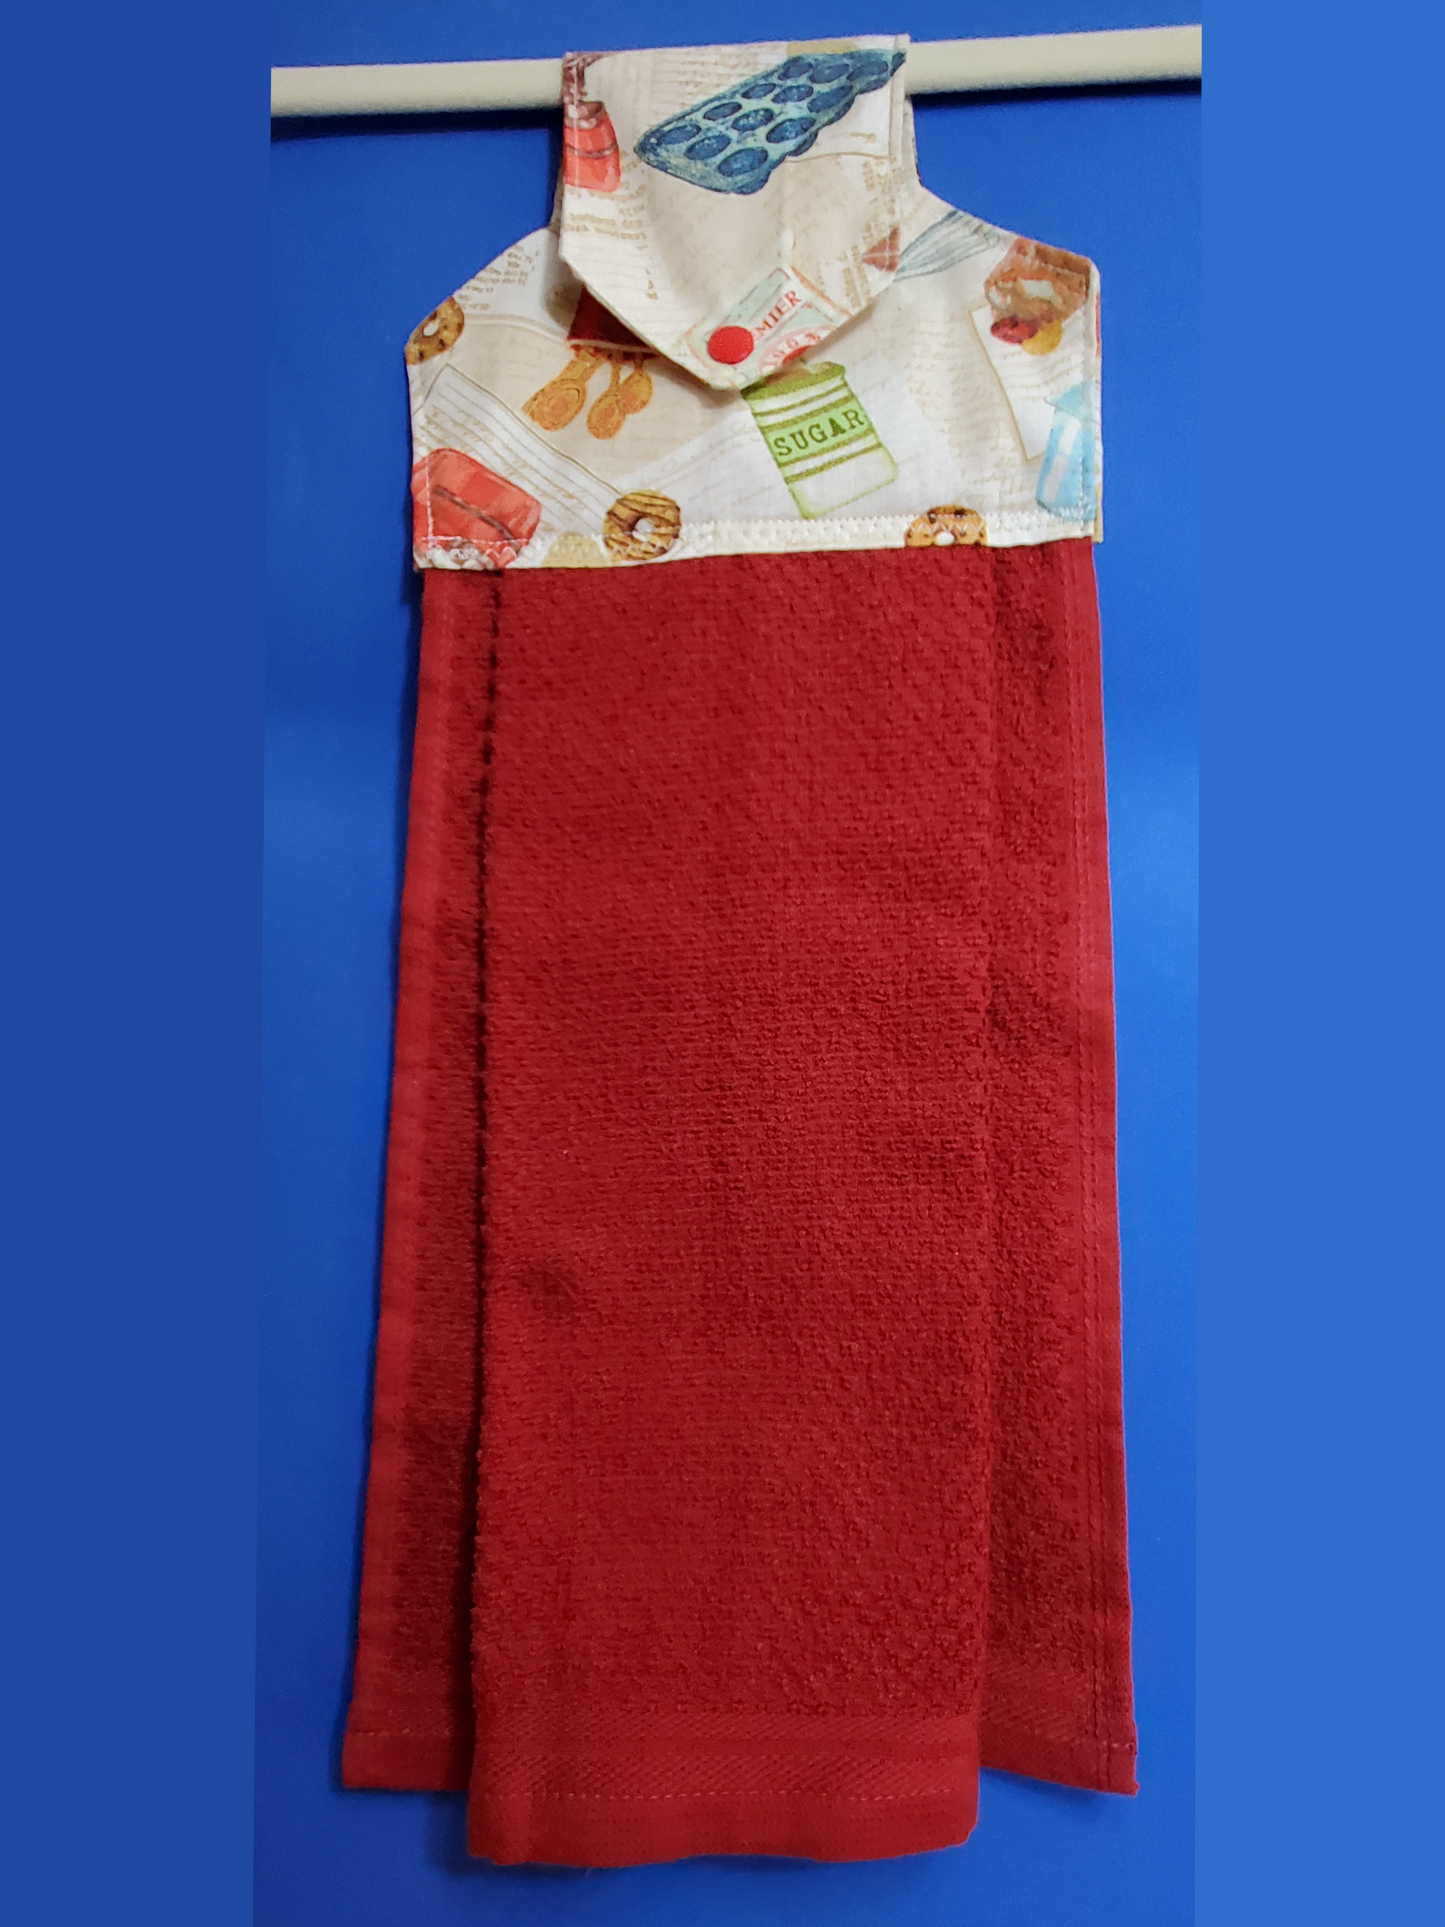 Kitchen Towel / Snap Tab hanging towel / Bake Ware